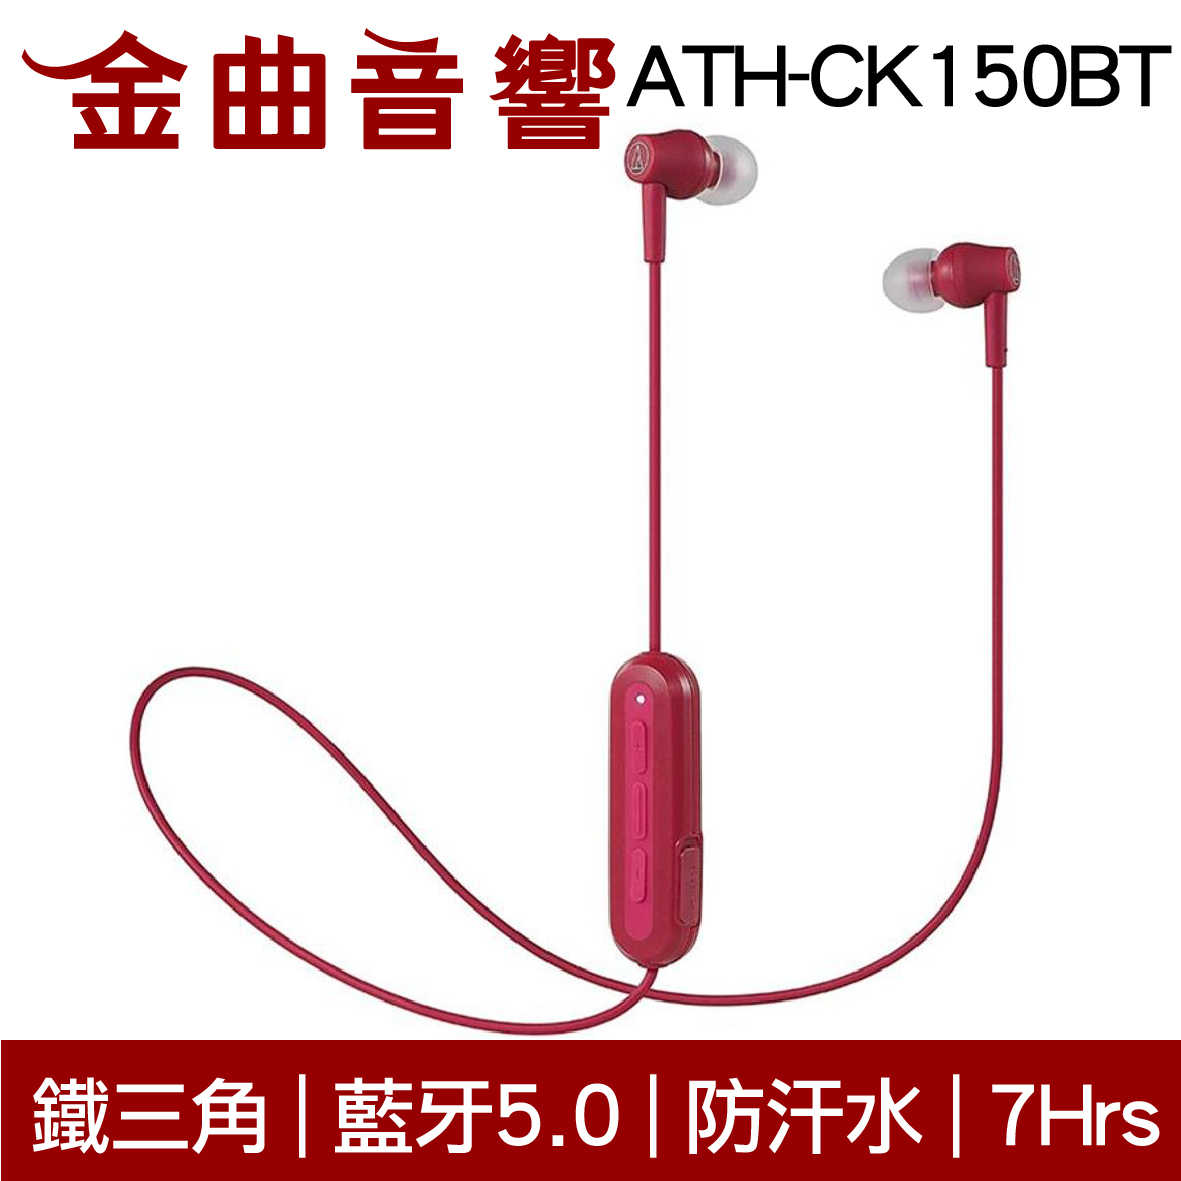 鐵三角 ATH-CK150BT 紅色 可通話 無線 藍牙 耳道式耳機 | 金曲音響